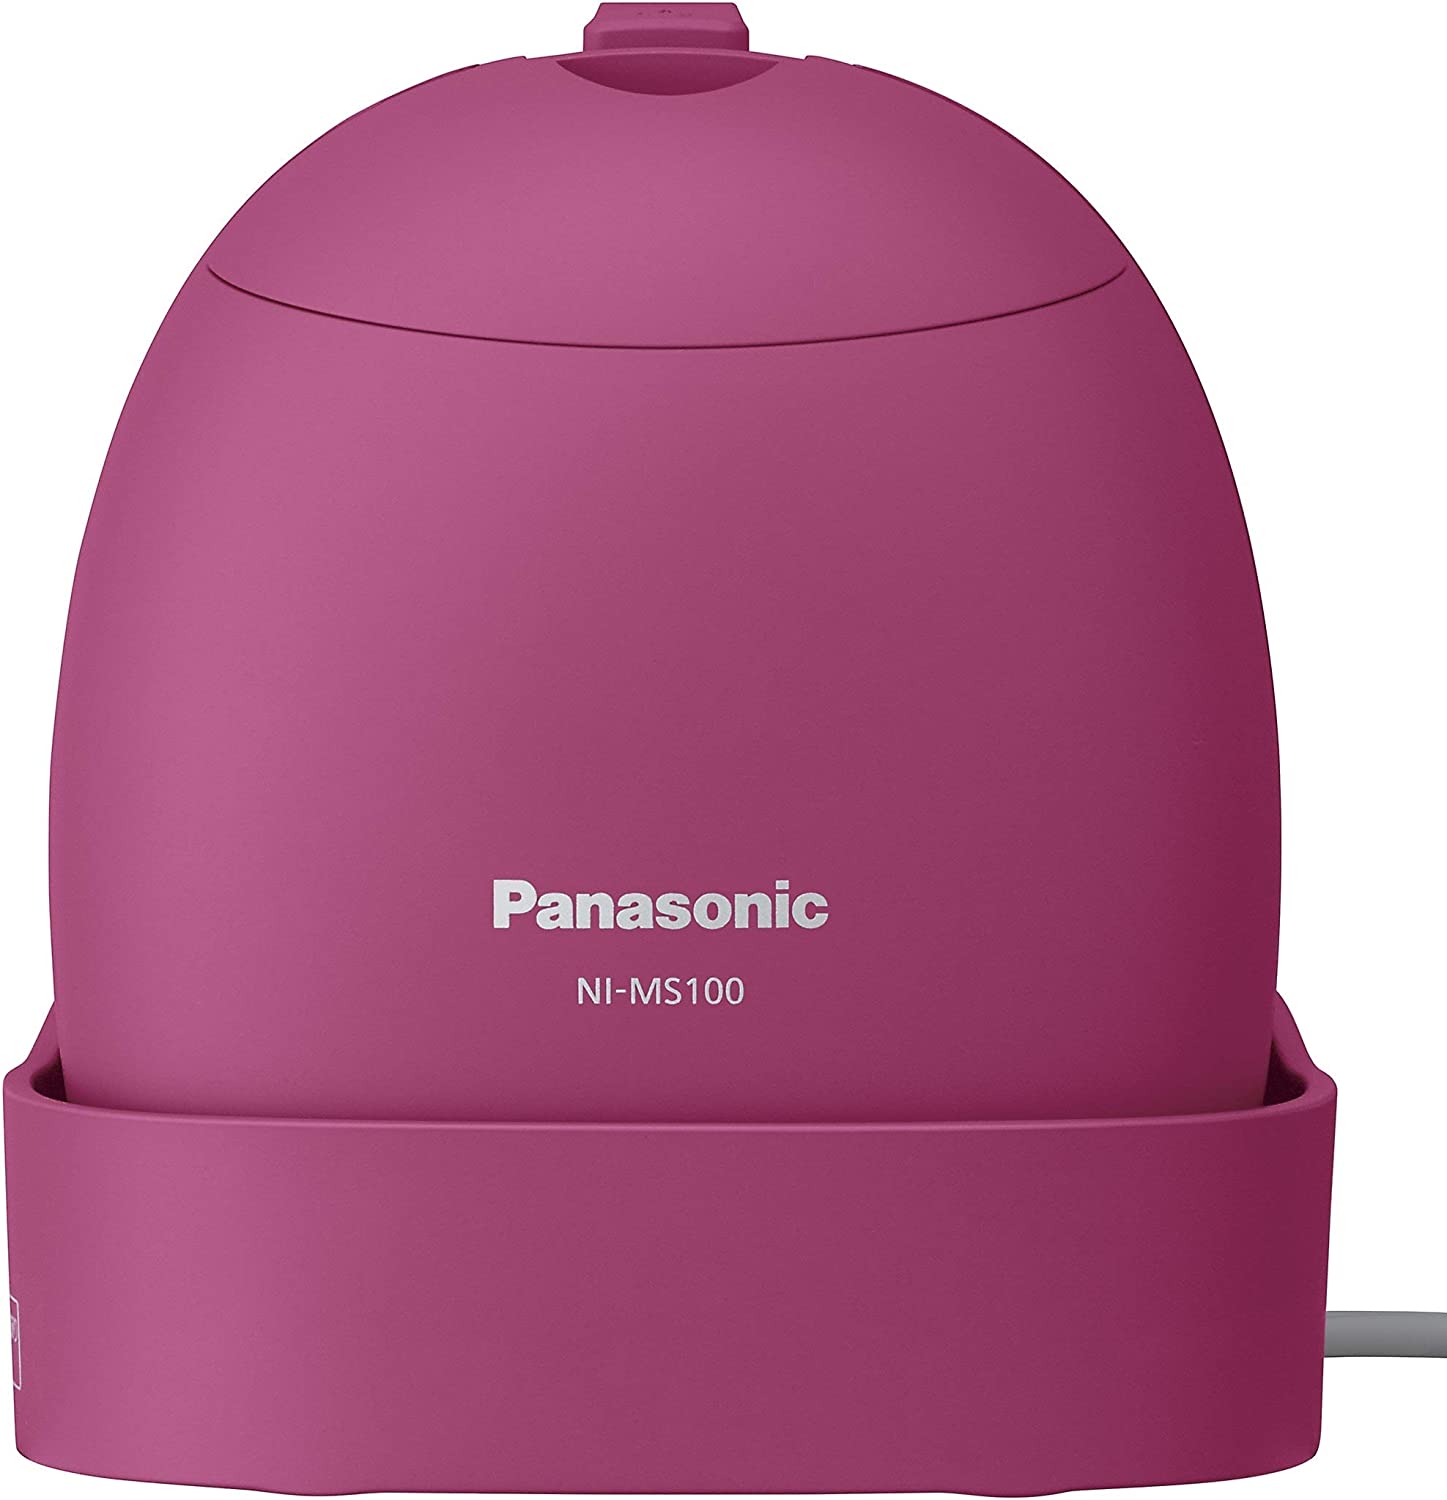 日本公司貨 Panasonic 國際牌 NI-MS100 國際電壓 蒸氣 摺疊式 平燙 掛燙 除臭 日本必買代購